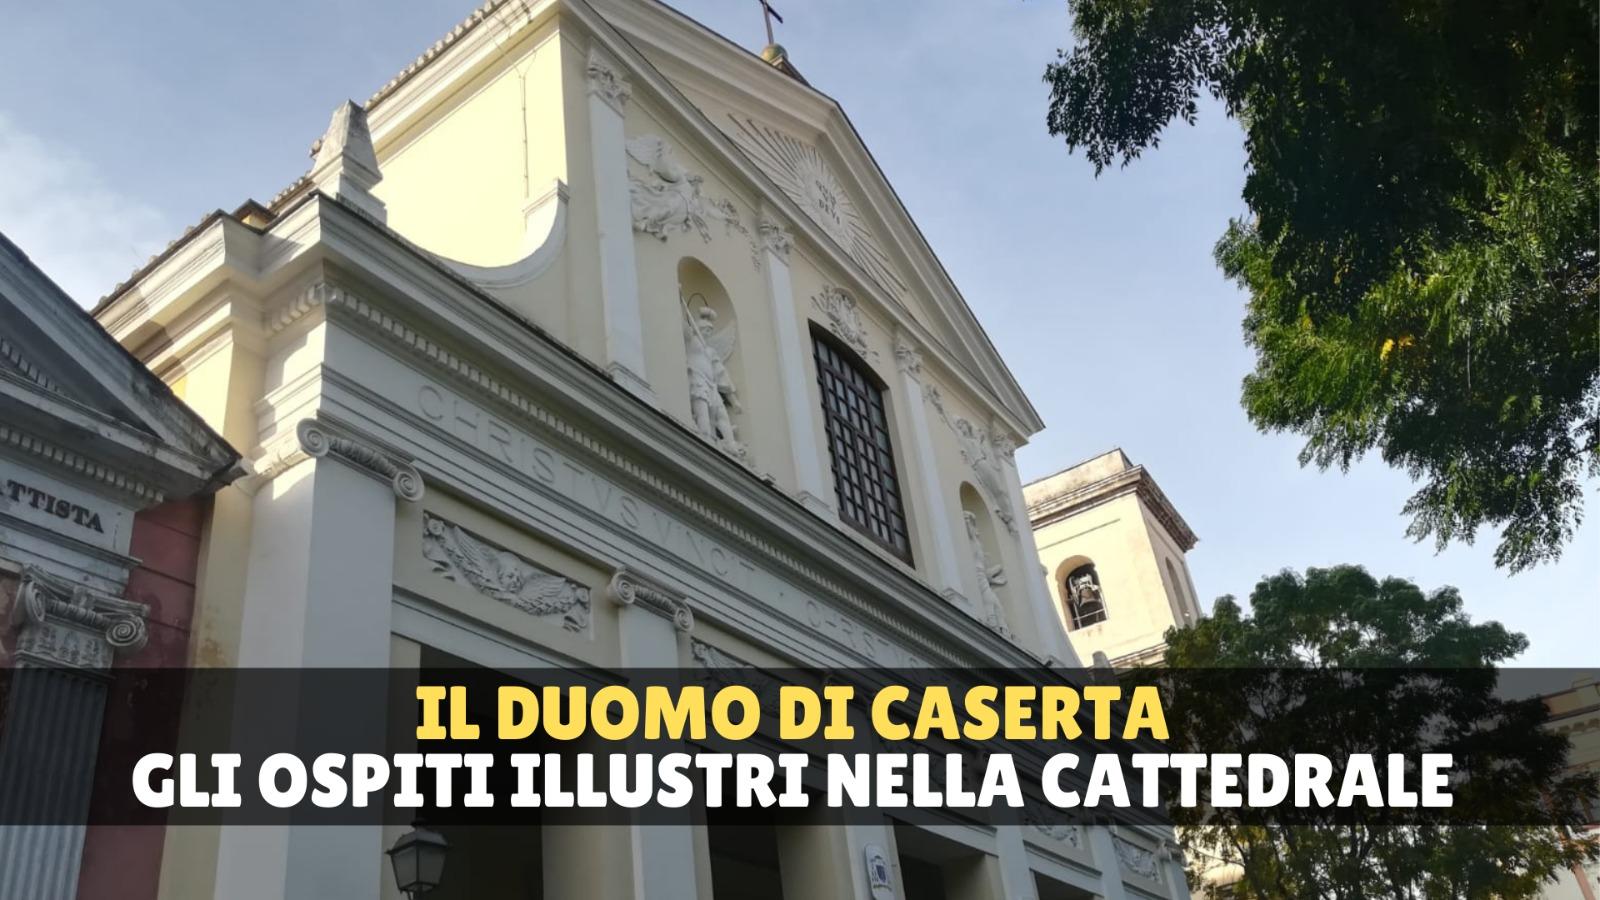 Die Kathedrale von Caserta: eine bewegte Geschichte